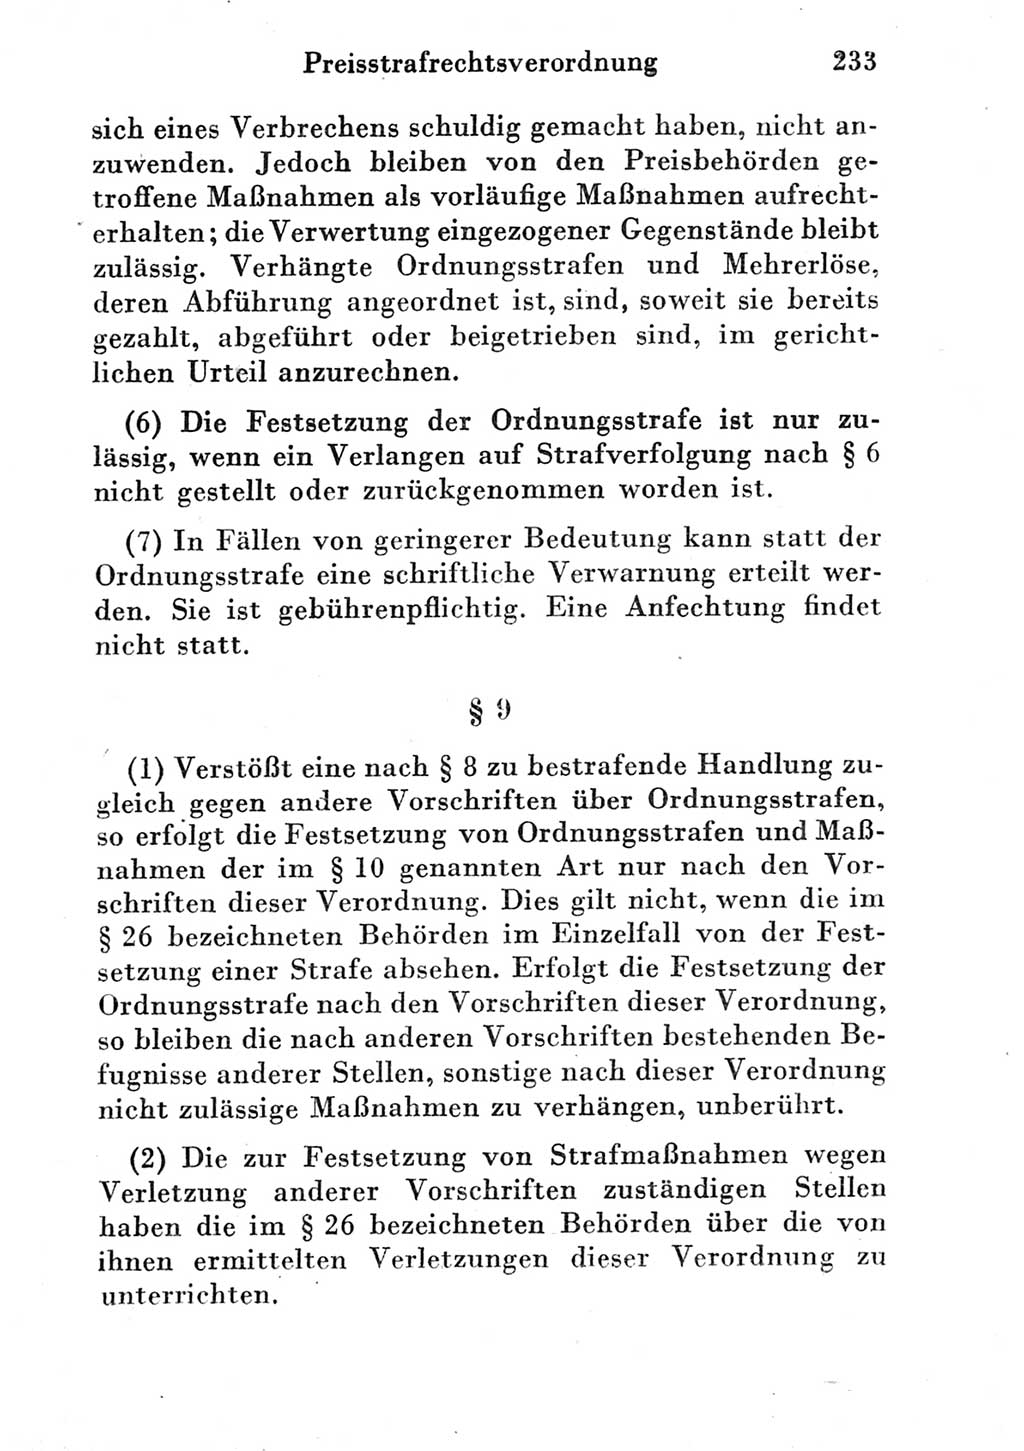 Strafgesetzbuch (StGB) und andere Strafgesetze [Deutsche Demokratische Republik (DDR)] 1951, Seite 233 (StGB Strafges. DDR 1951, S. 233)